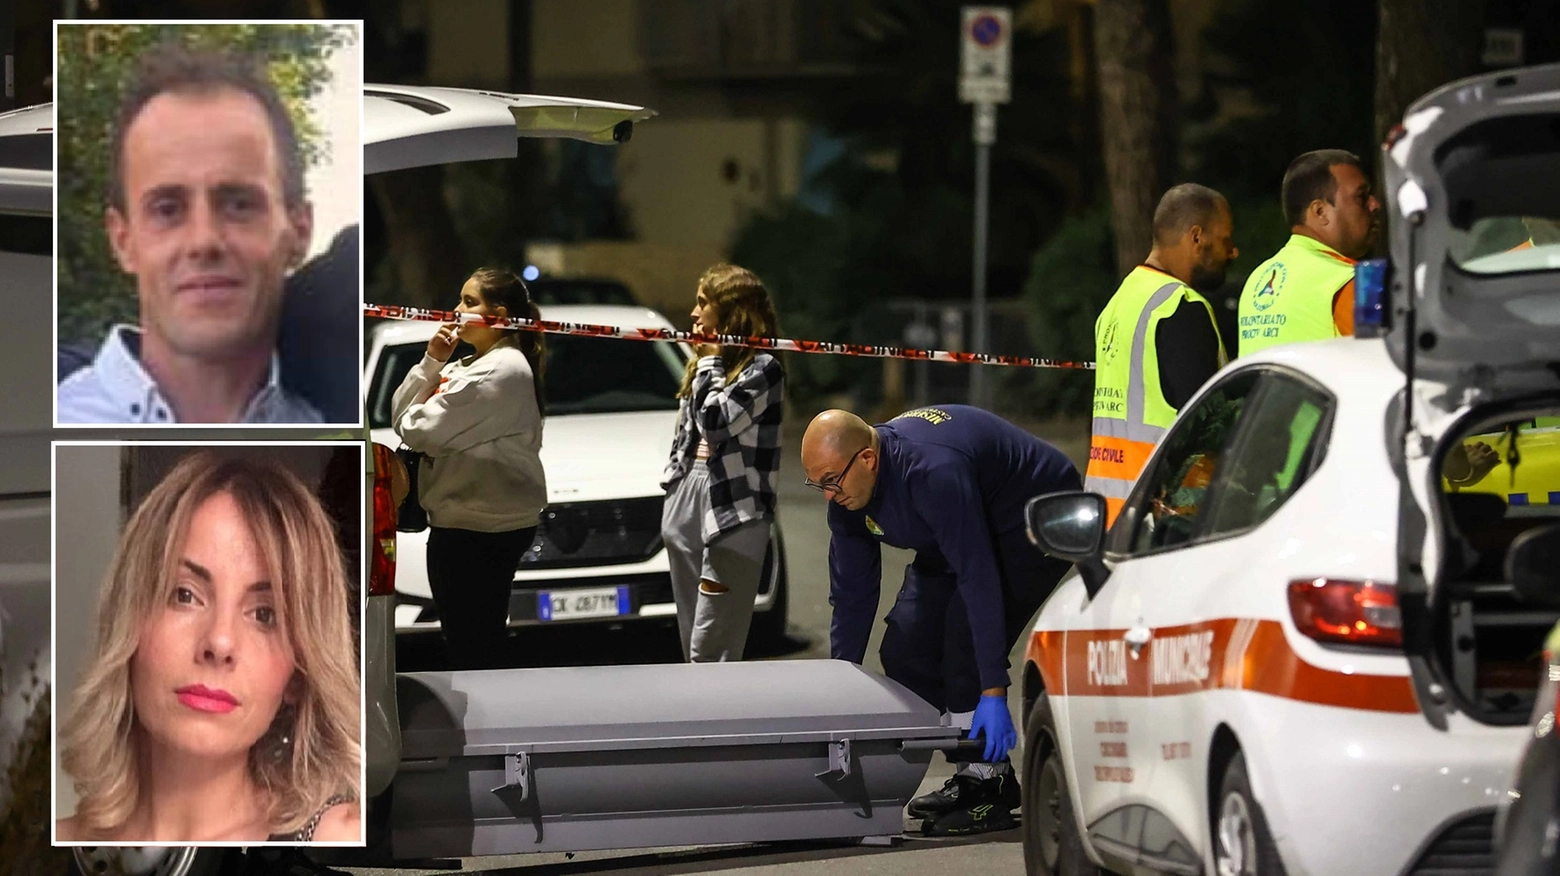 Femminicidio a Castelfiorentino: continuano le ricerche dell’uomo che si è allontanato in auto. Il sindaco Falorni proclama due giorni di lutto: “Fiaccolata contro questa violenza inaudita”